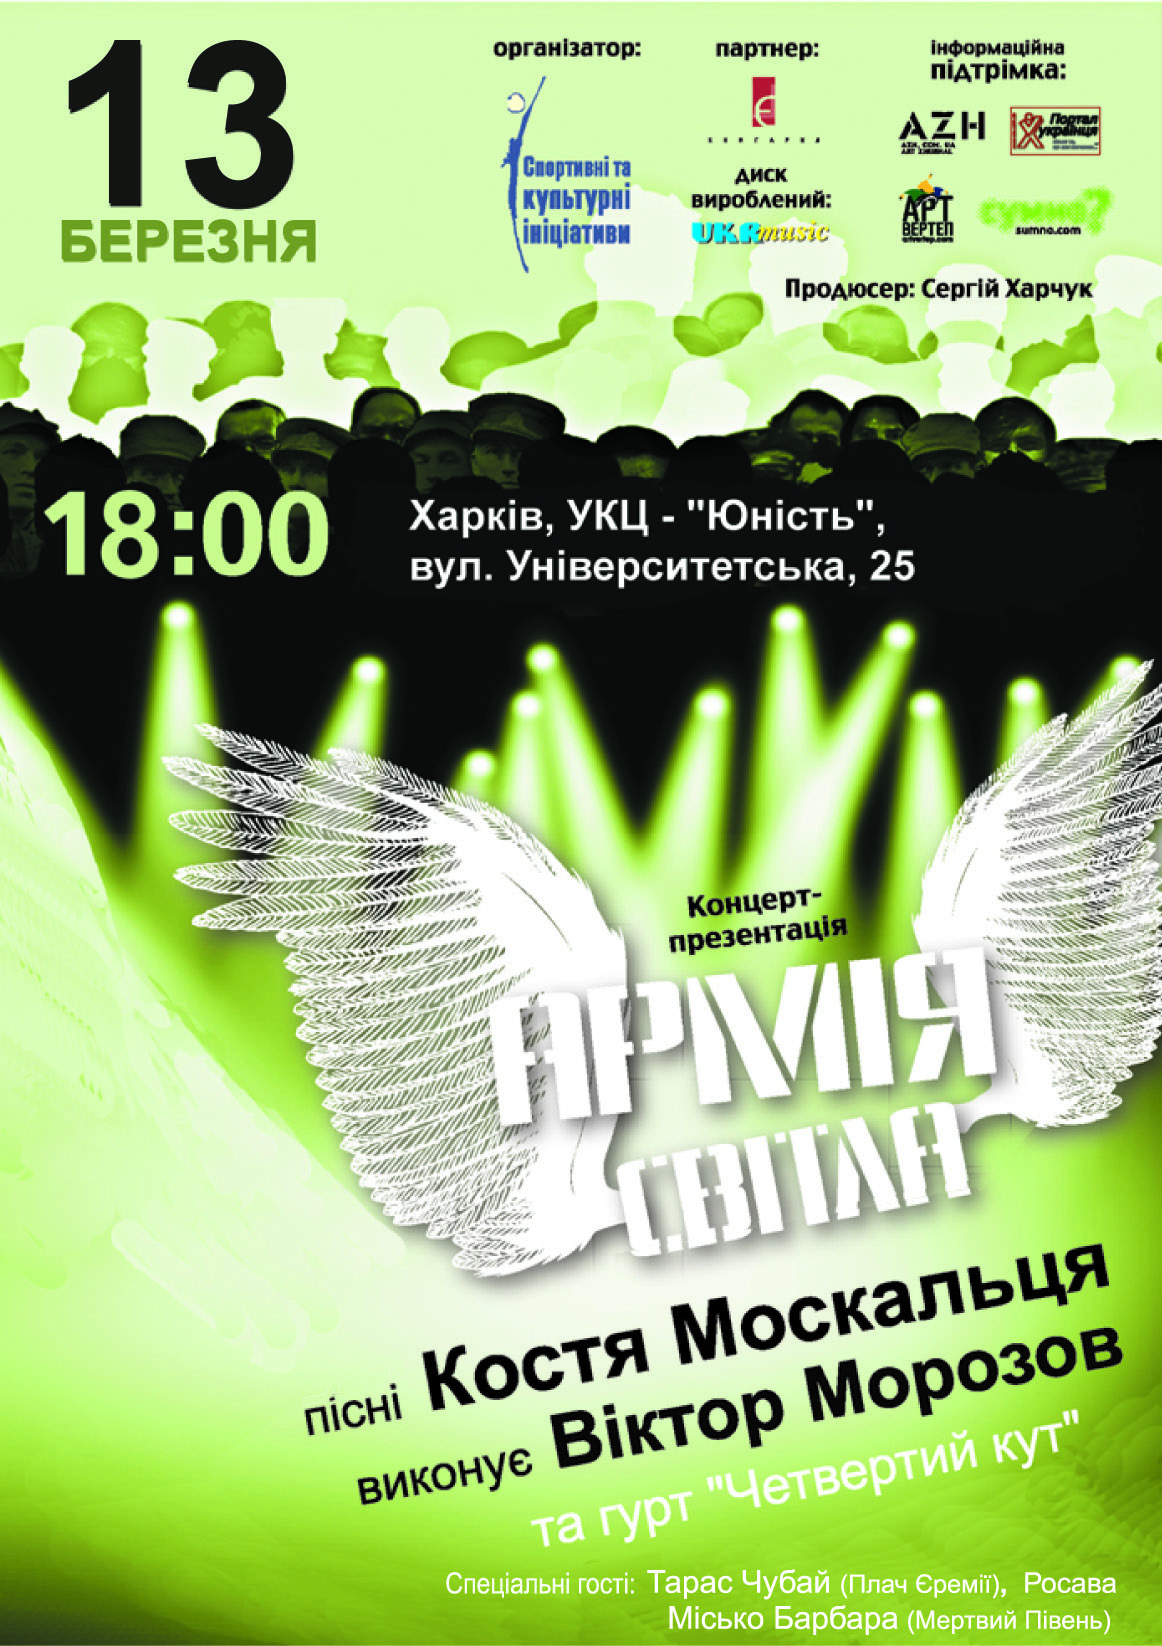 K.Moskalec

































































                                                          show